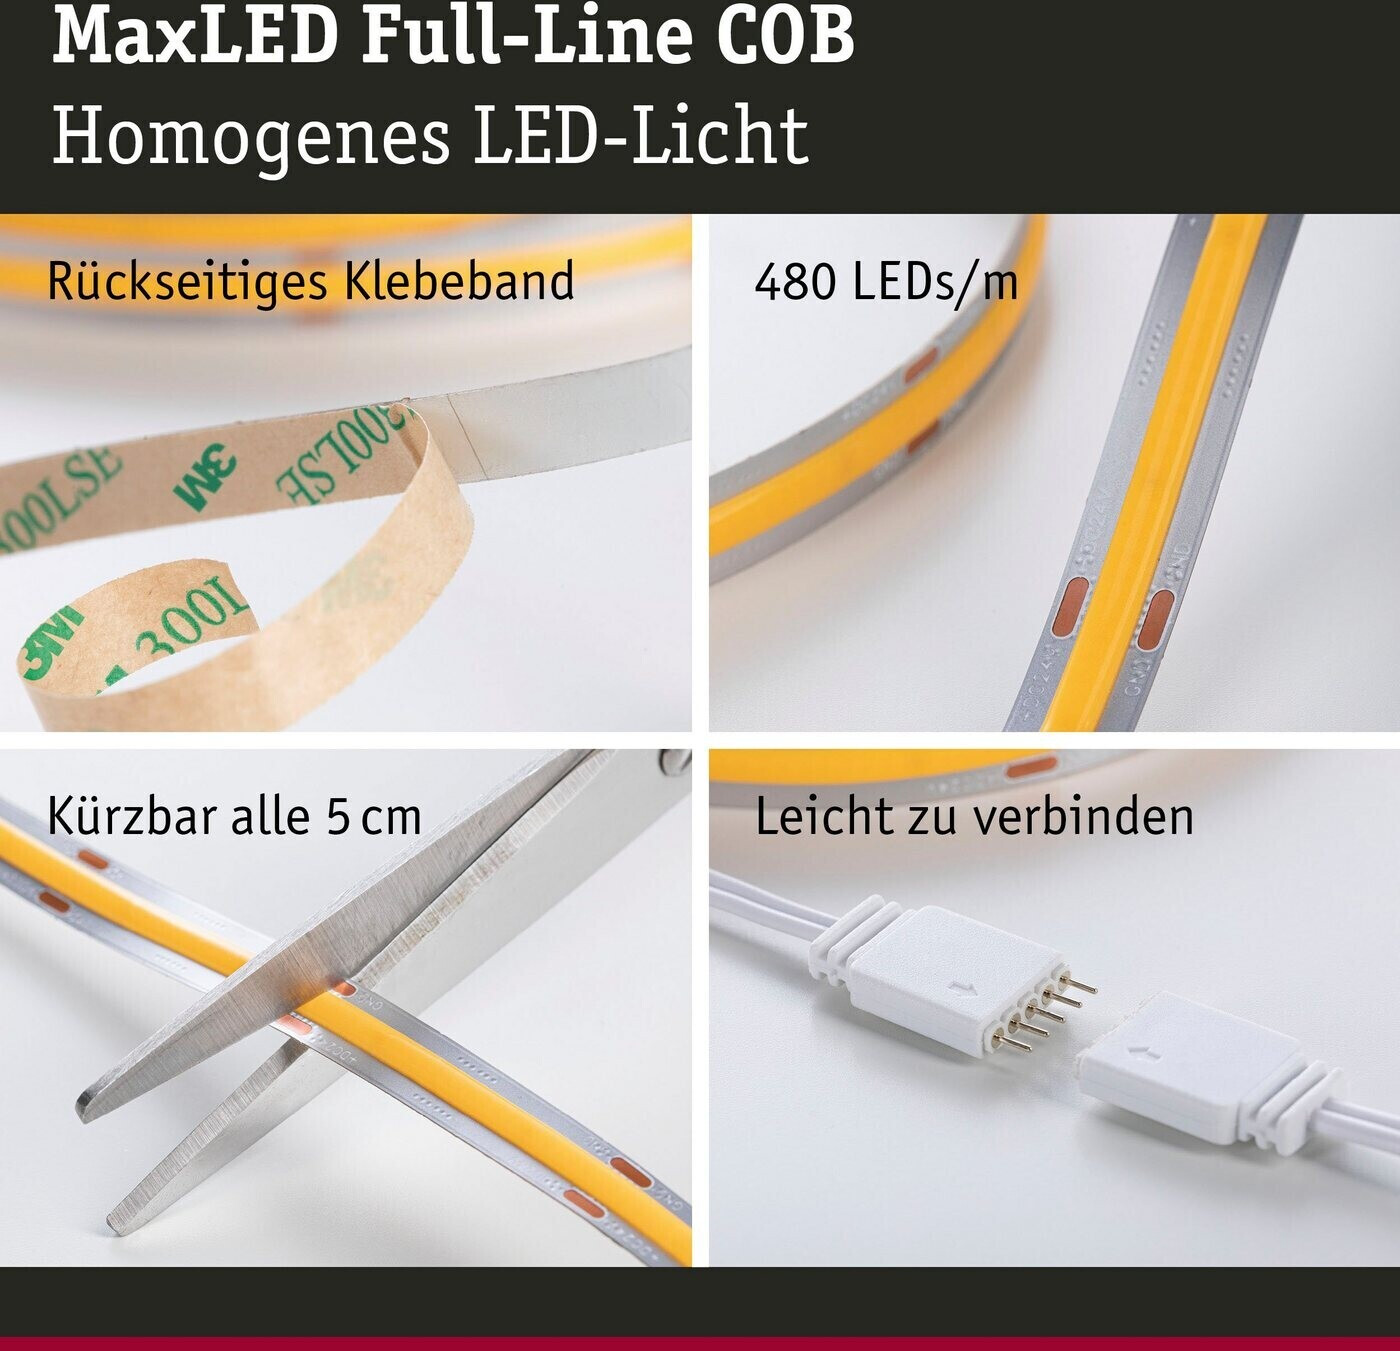 Paulmann MaxLED 1000 LED | Preisvergleich 3m (71049) Full-Line COB € Stripe ab 56,51 bei Basisset